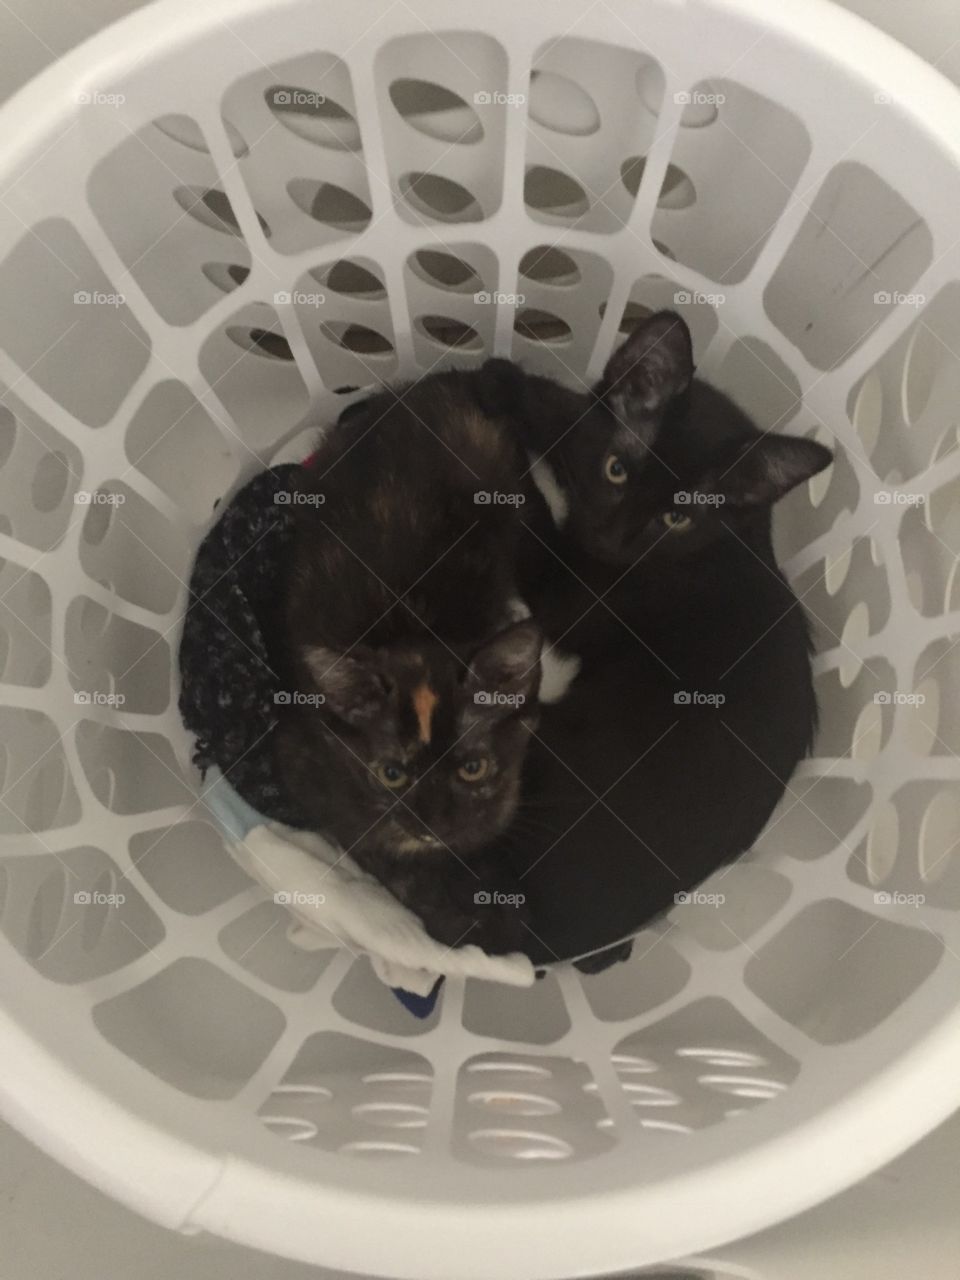 Laundry kittens